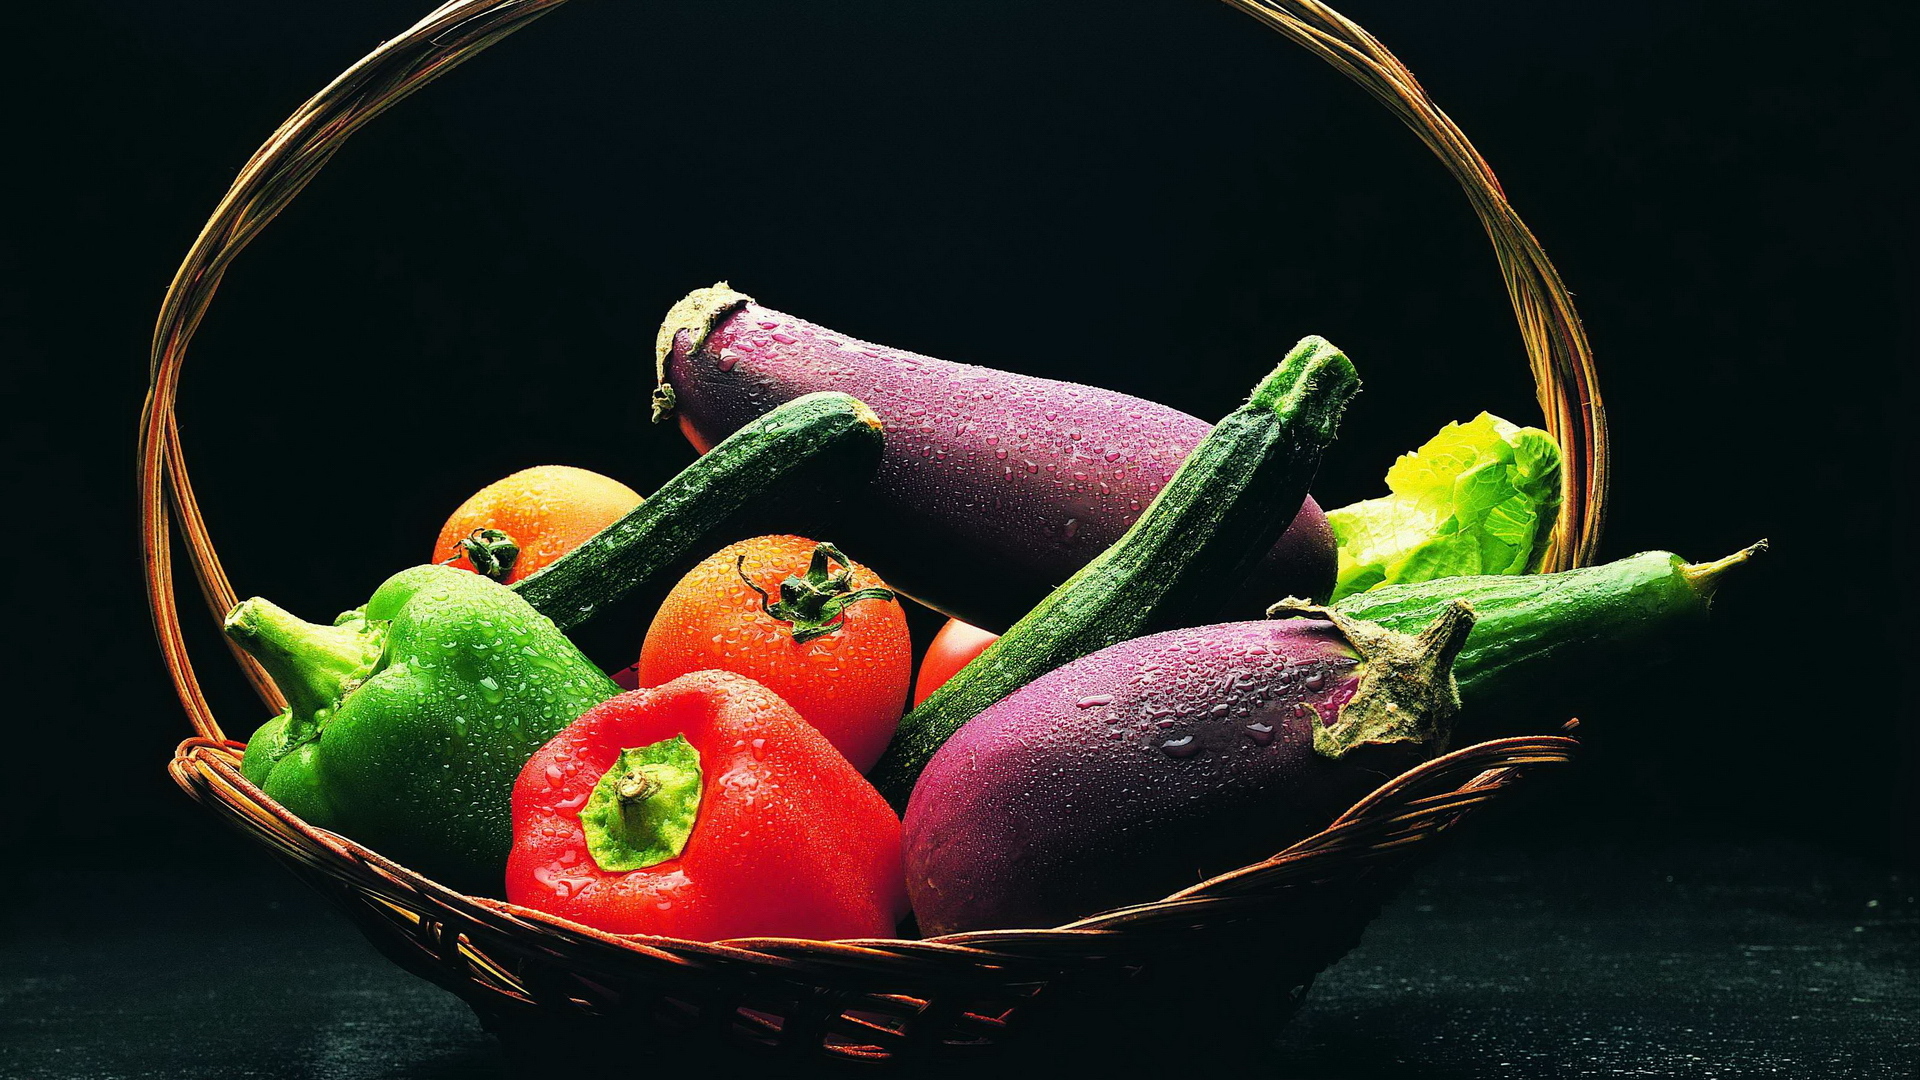 Free download wallpaper Food, Vegetables on your PC desktop